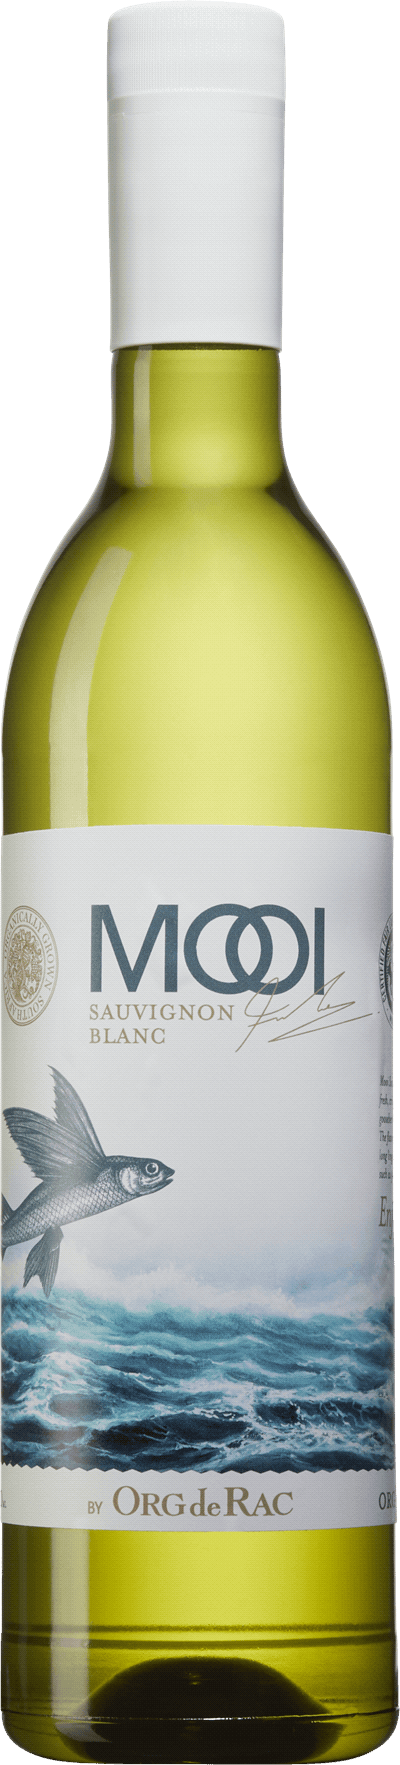 Mooi by Org de Rac Sauvignon Blanc 2022 Fredrik Schelin